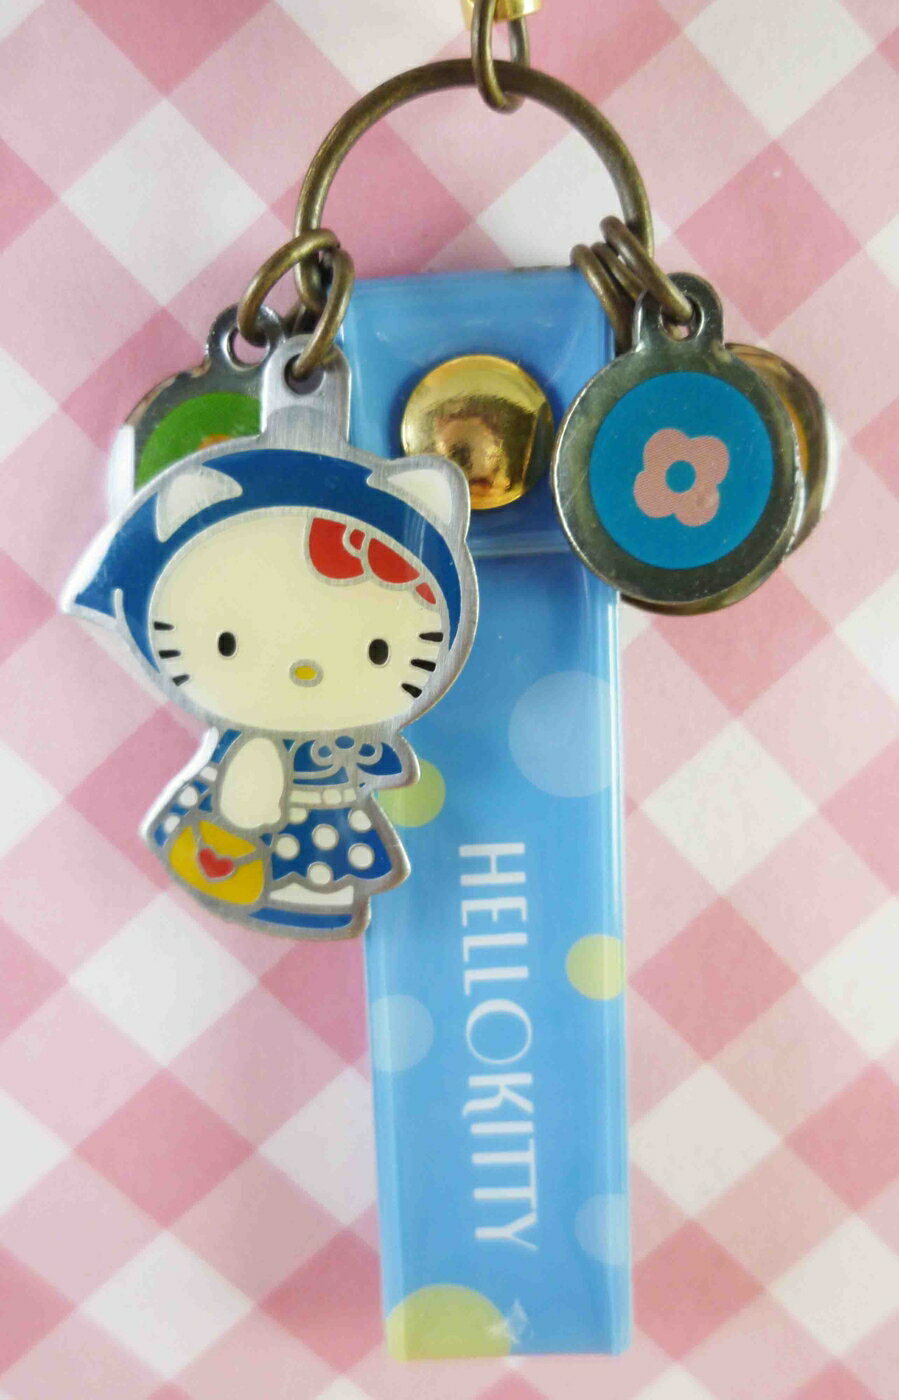 【震撼精品百貨】Hello Kitty 凱蒂貓 限定版手機提帶-藍頭巾 震撼日式精品百貨